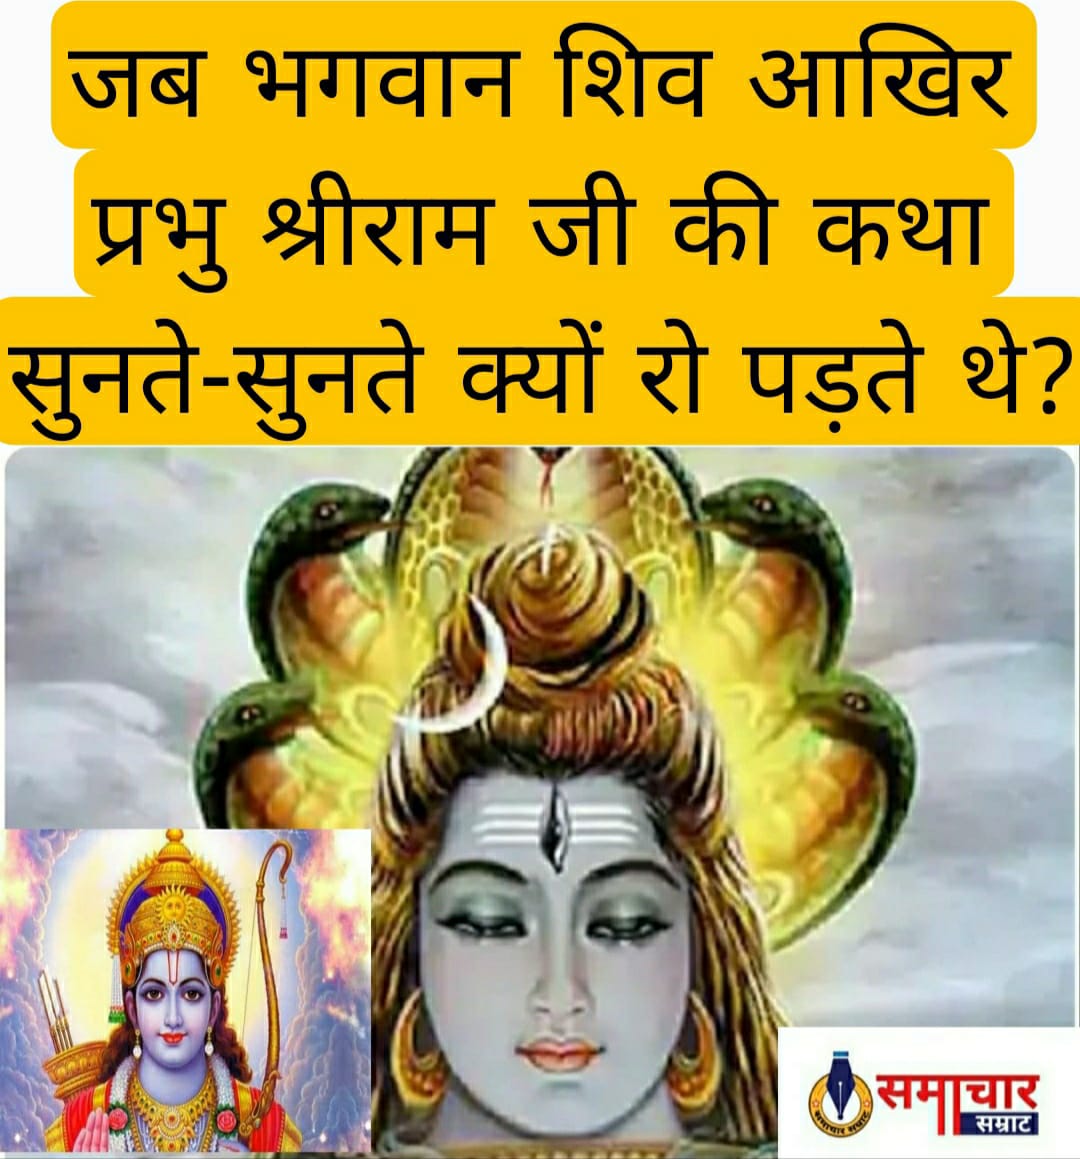 Dharm adhyatm : जब भगवान शिव आखिर प्रभु श्रीराम जी की कथा सुनते-सुनते क्यों रो पड़ते थे?